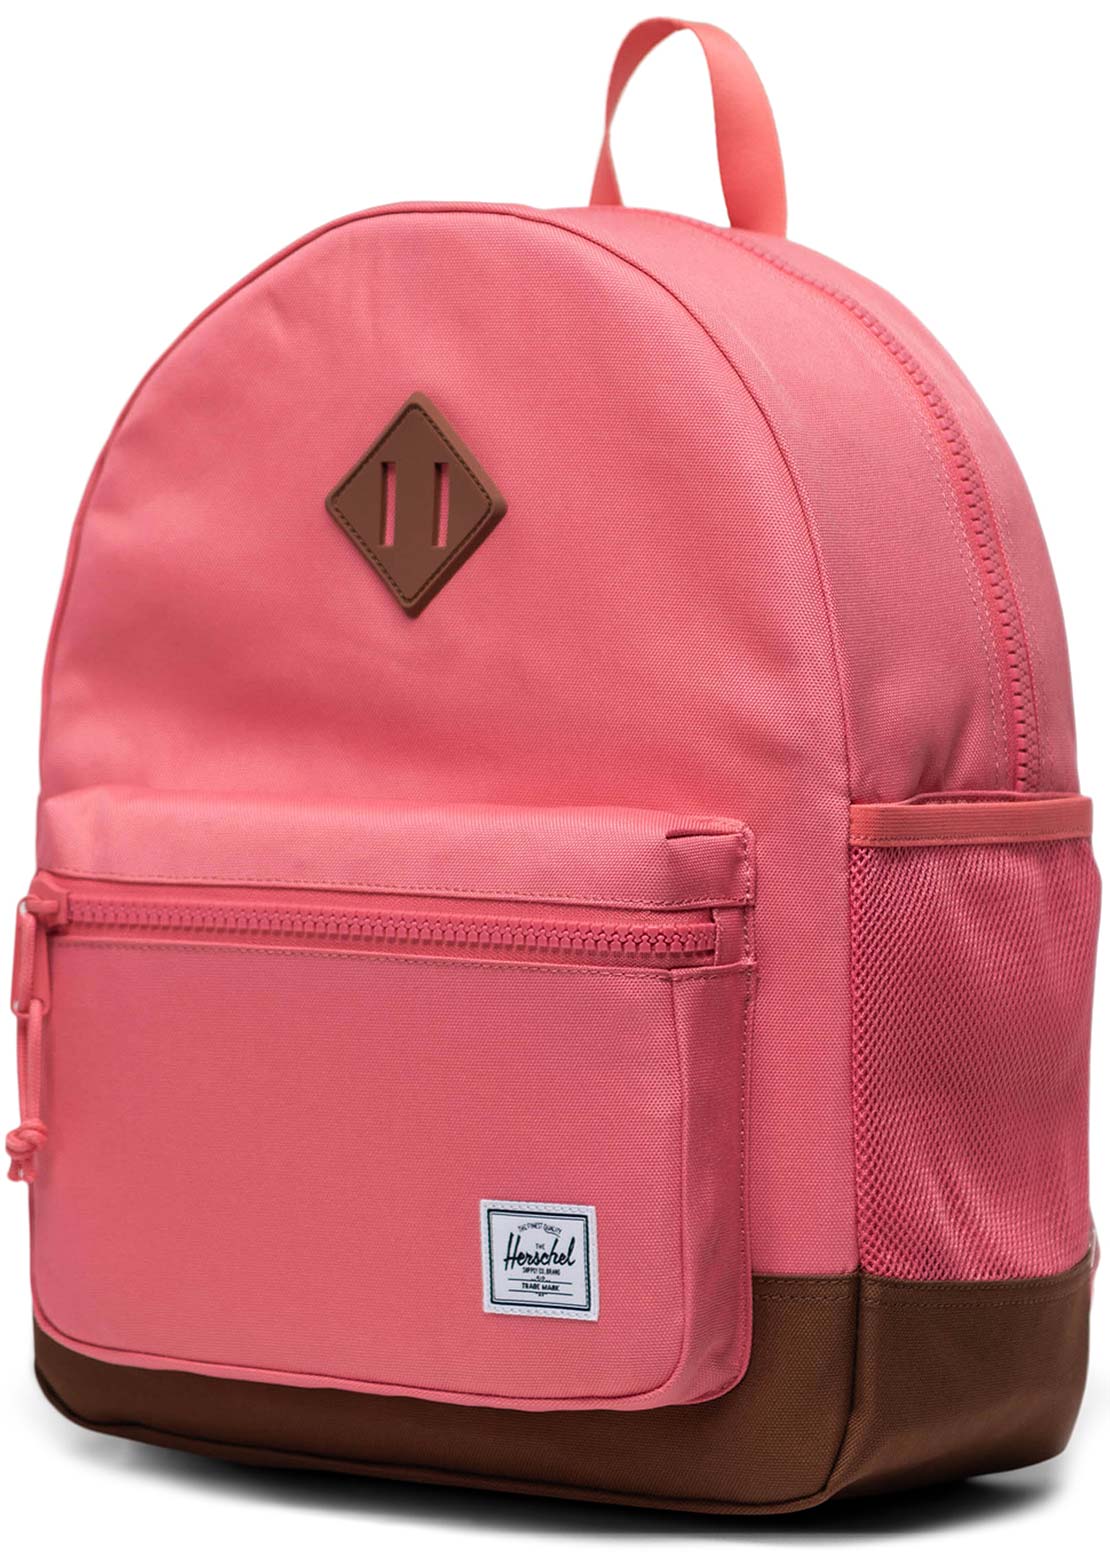 Herschel Junior Heritage Backpack Tea Rose/Saddle Brown